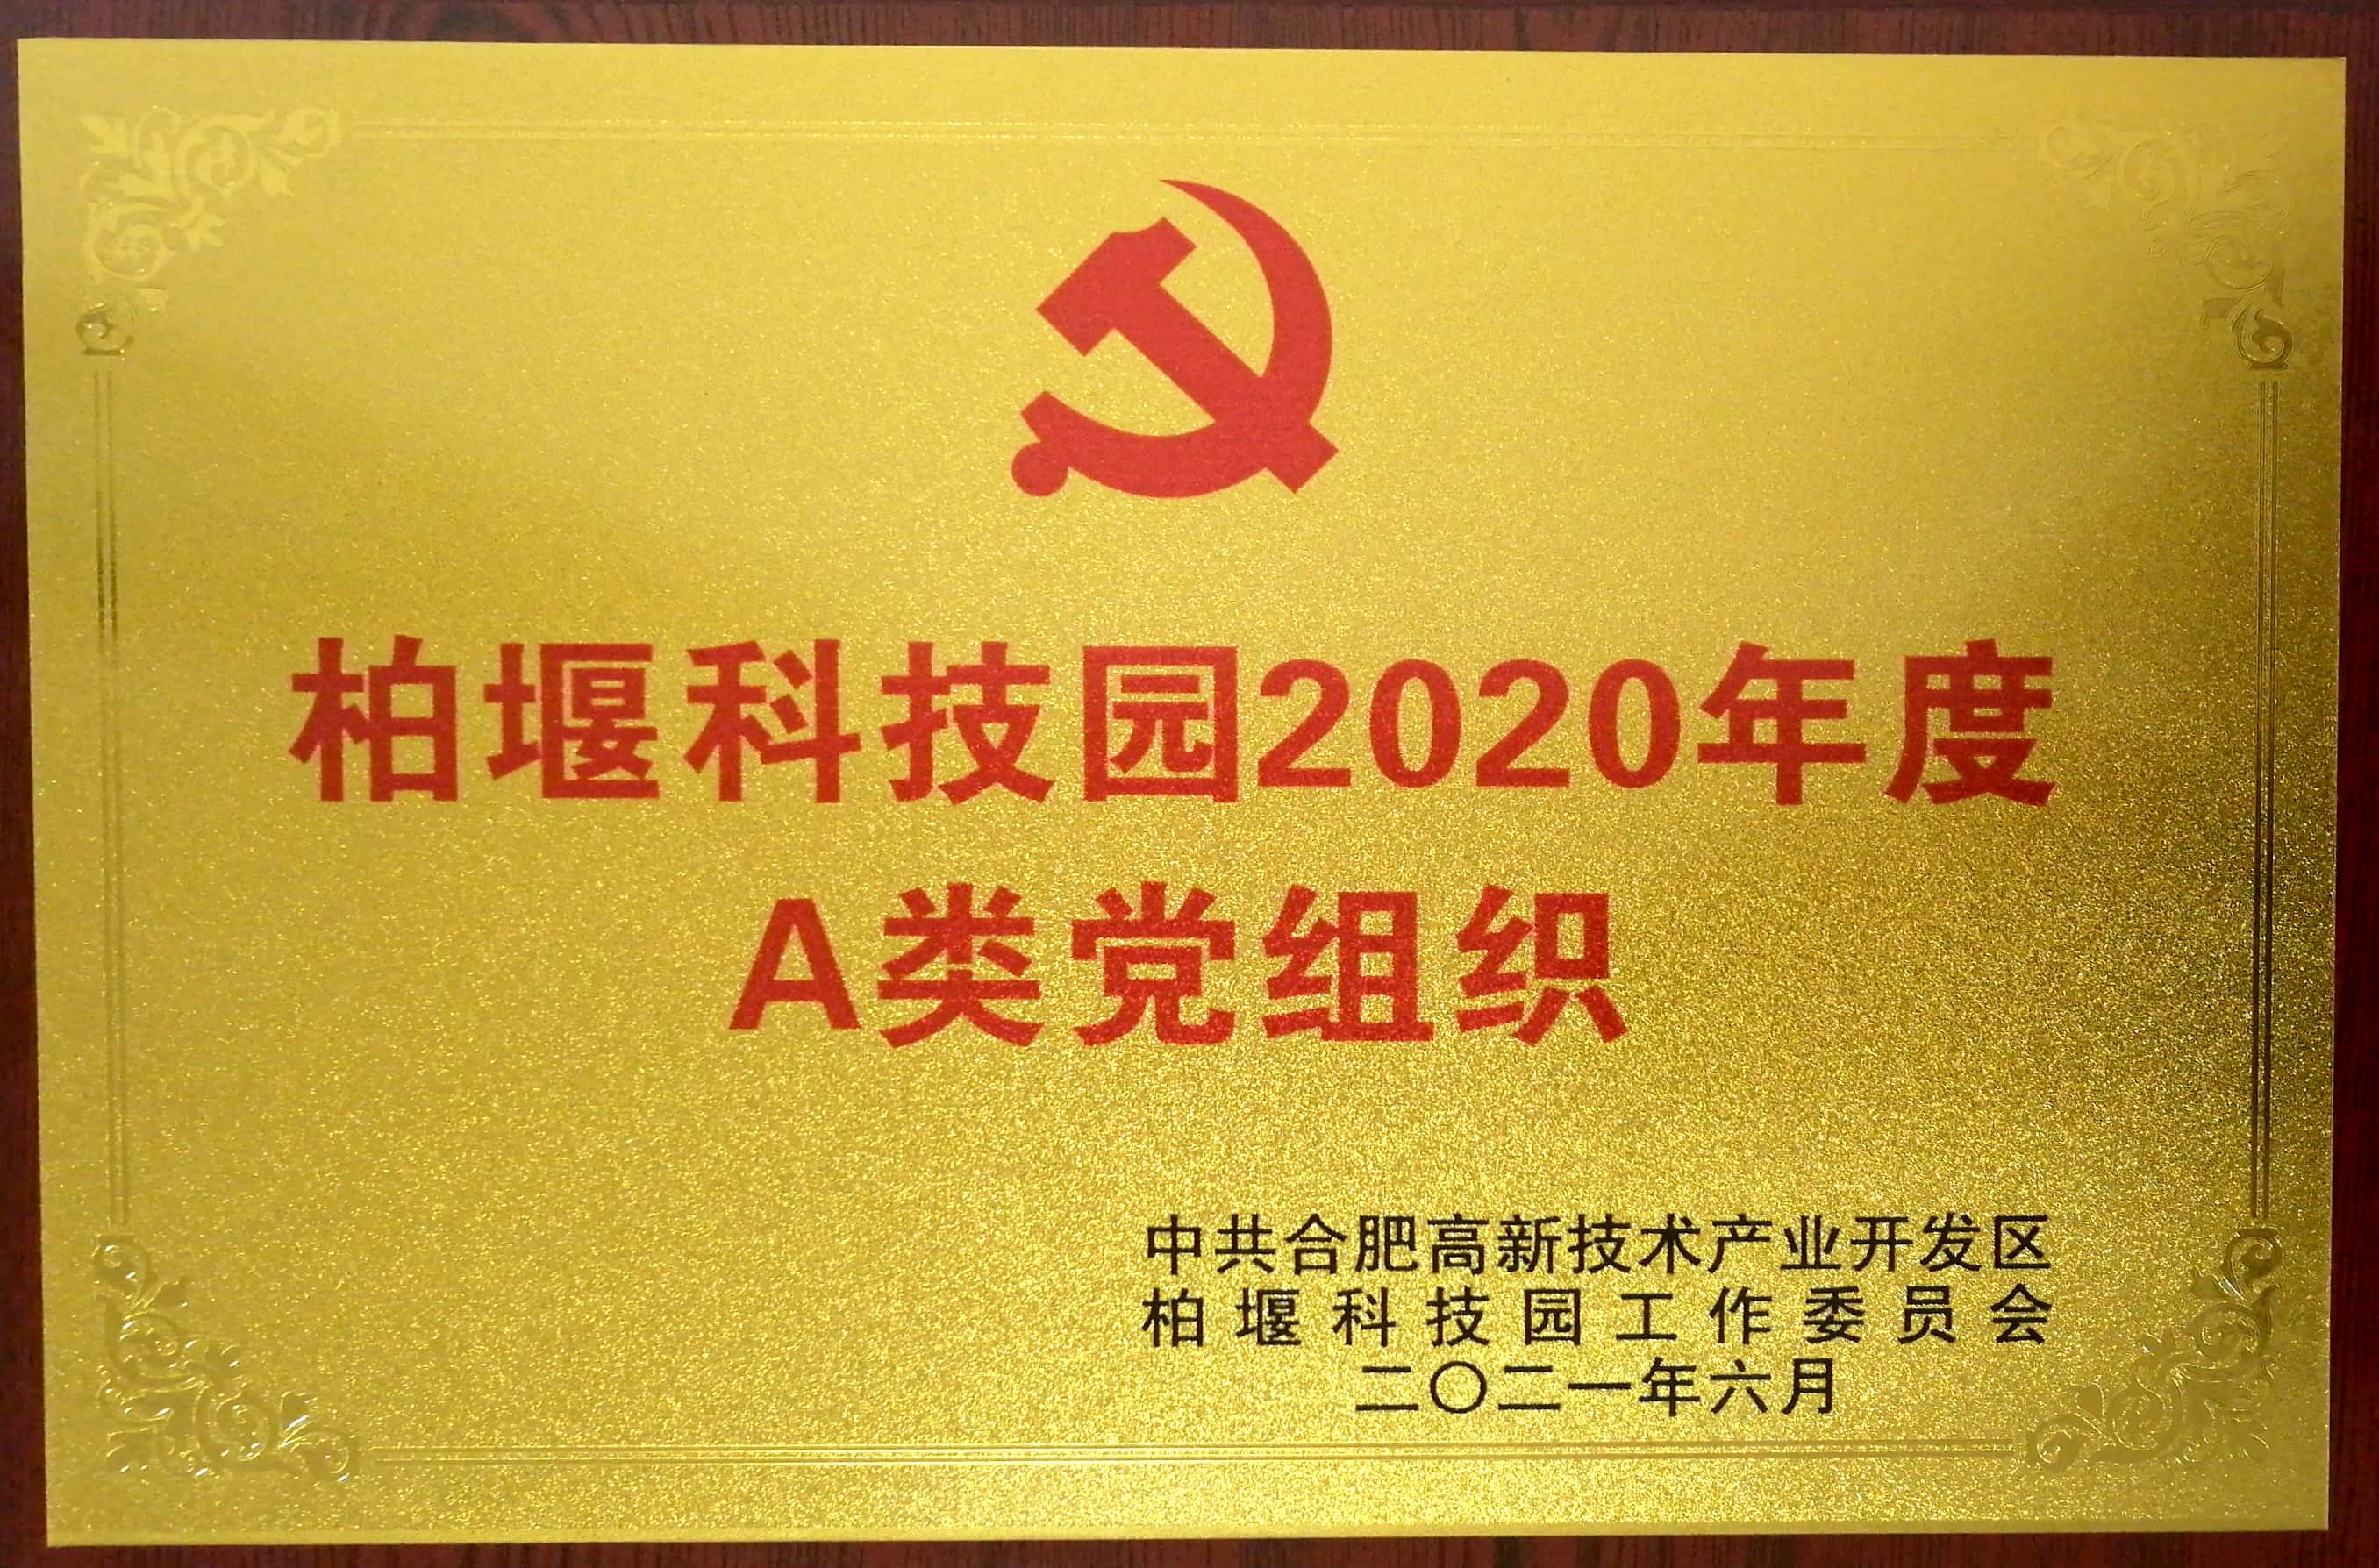 安徽深蓝医疗科技股份有限公司党支部被评为“柏堰科技园2020年度A类党组织”